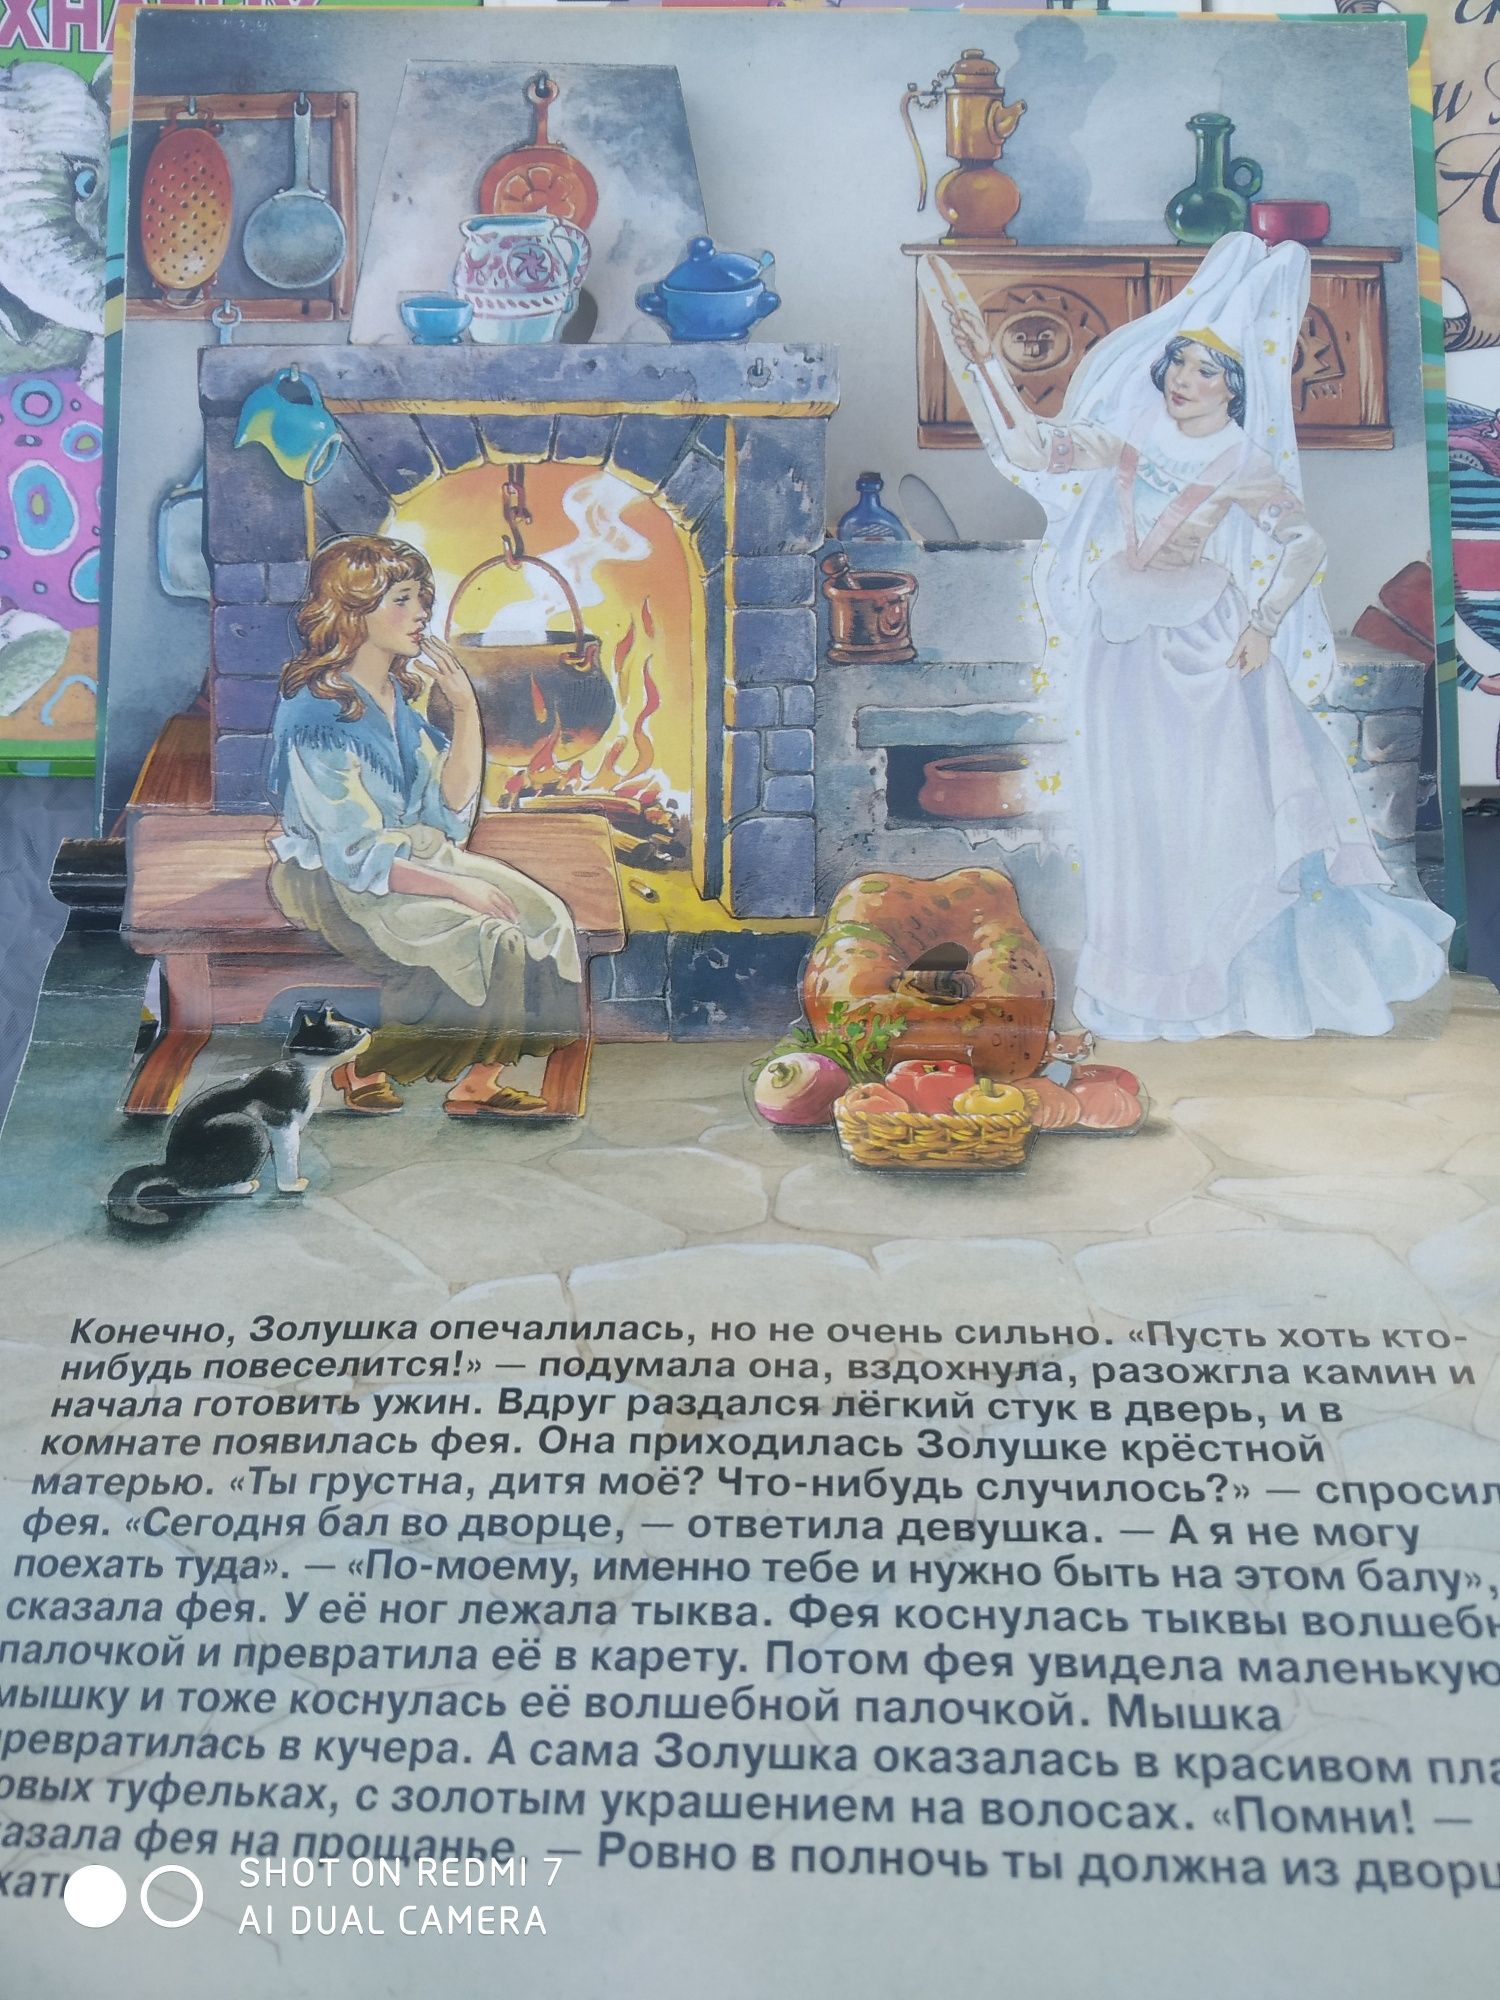 Детские книги Урфин Джюс, Энциклопедия для детей Волков